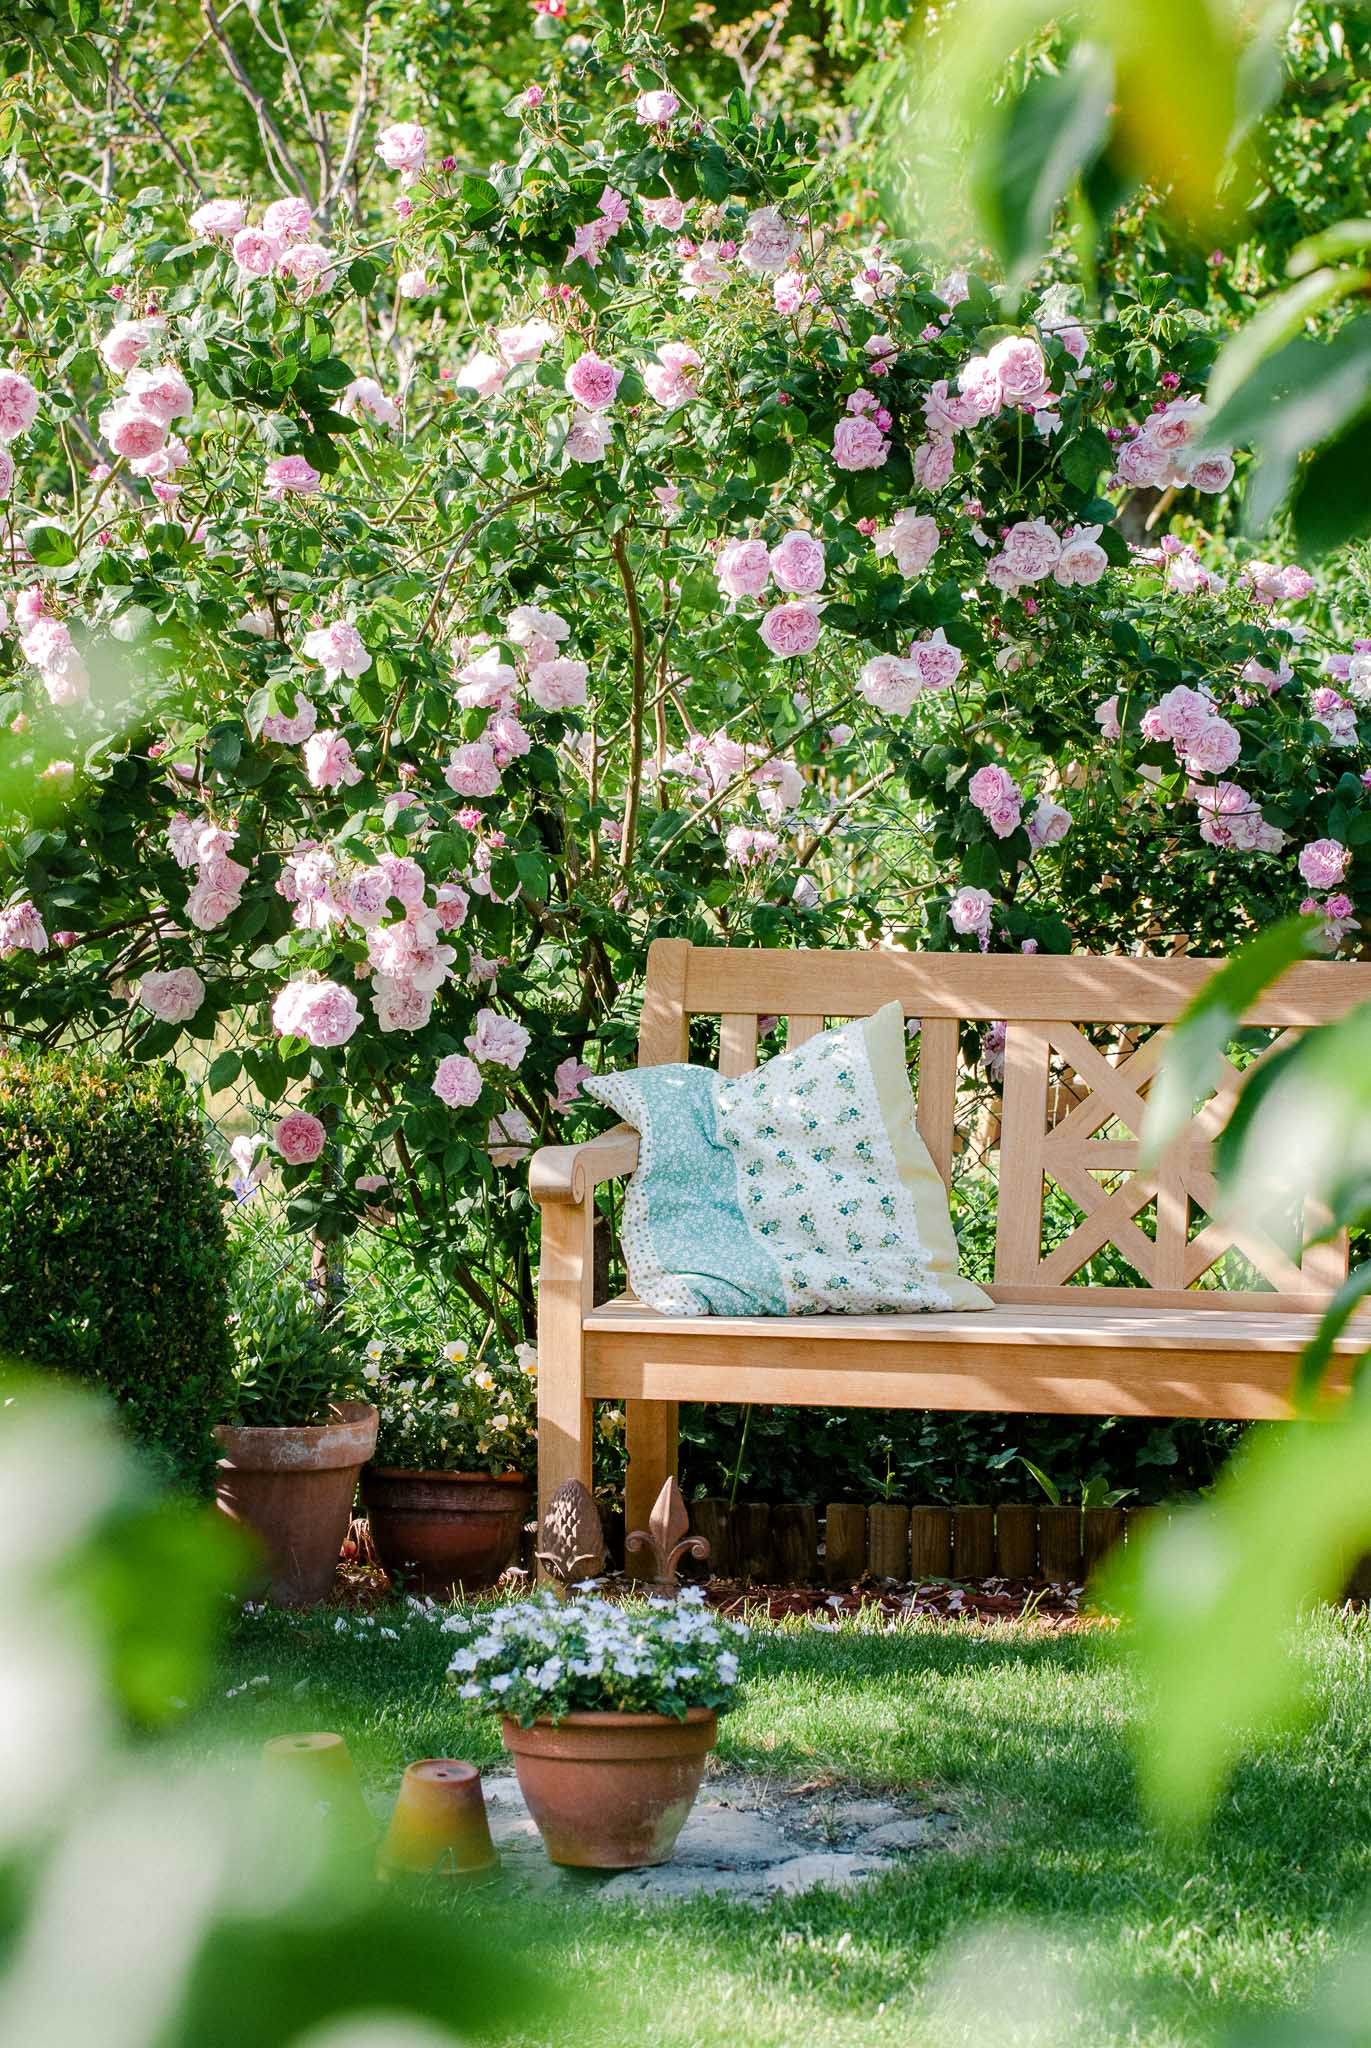 Gartengestaltung mit großen Pflanzen: Rose 'Fantin Latour' über einer Bank